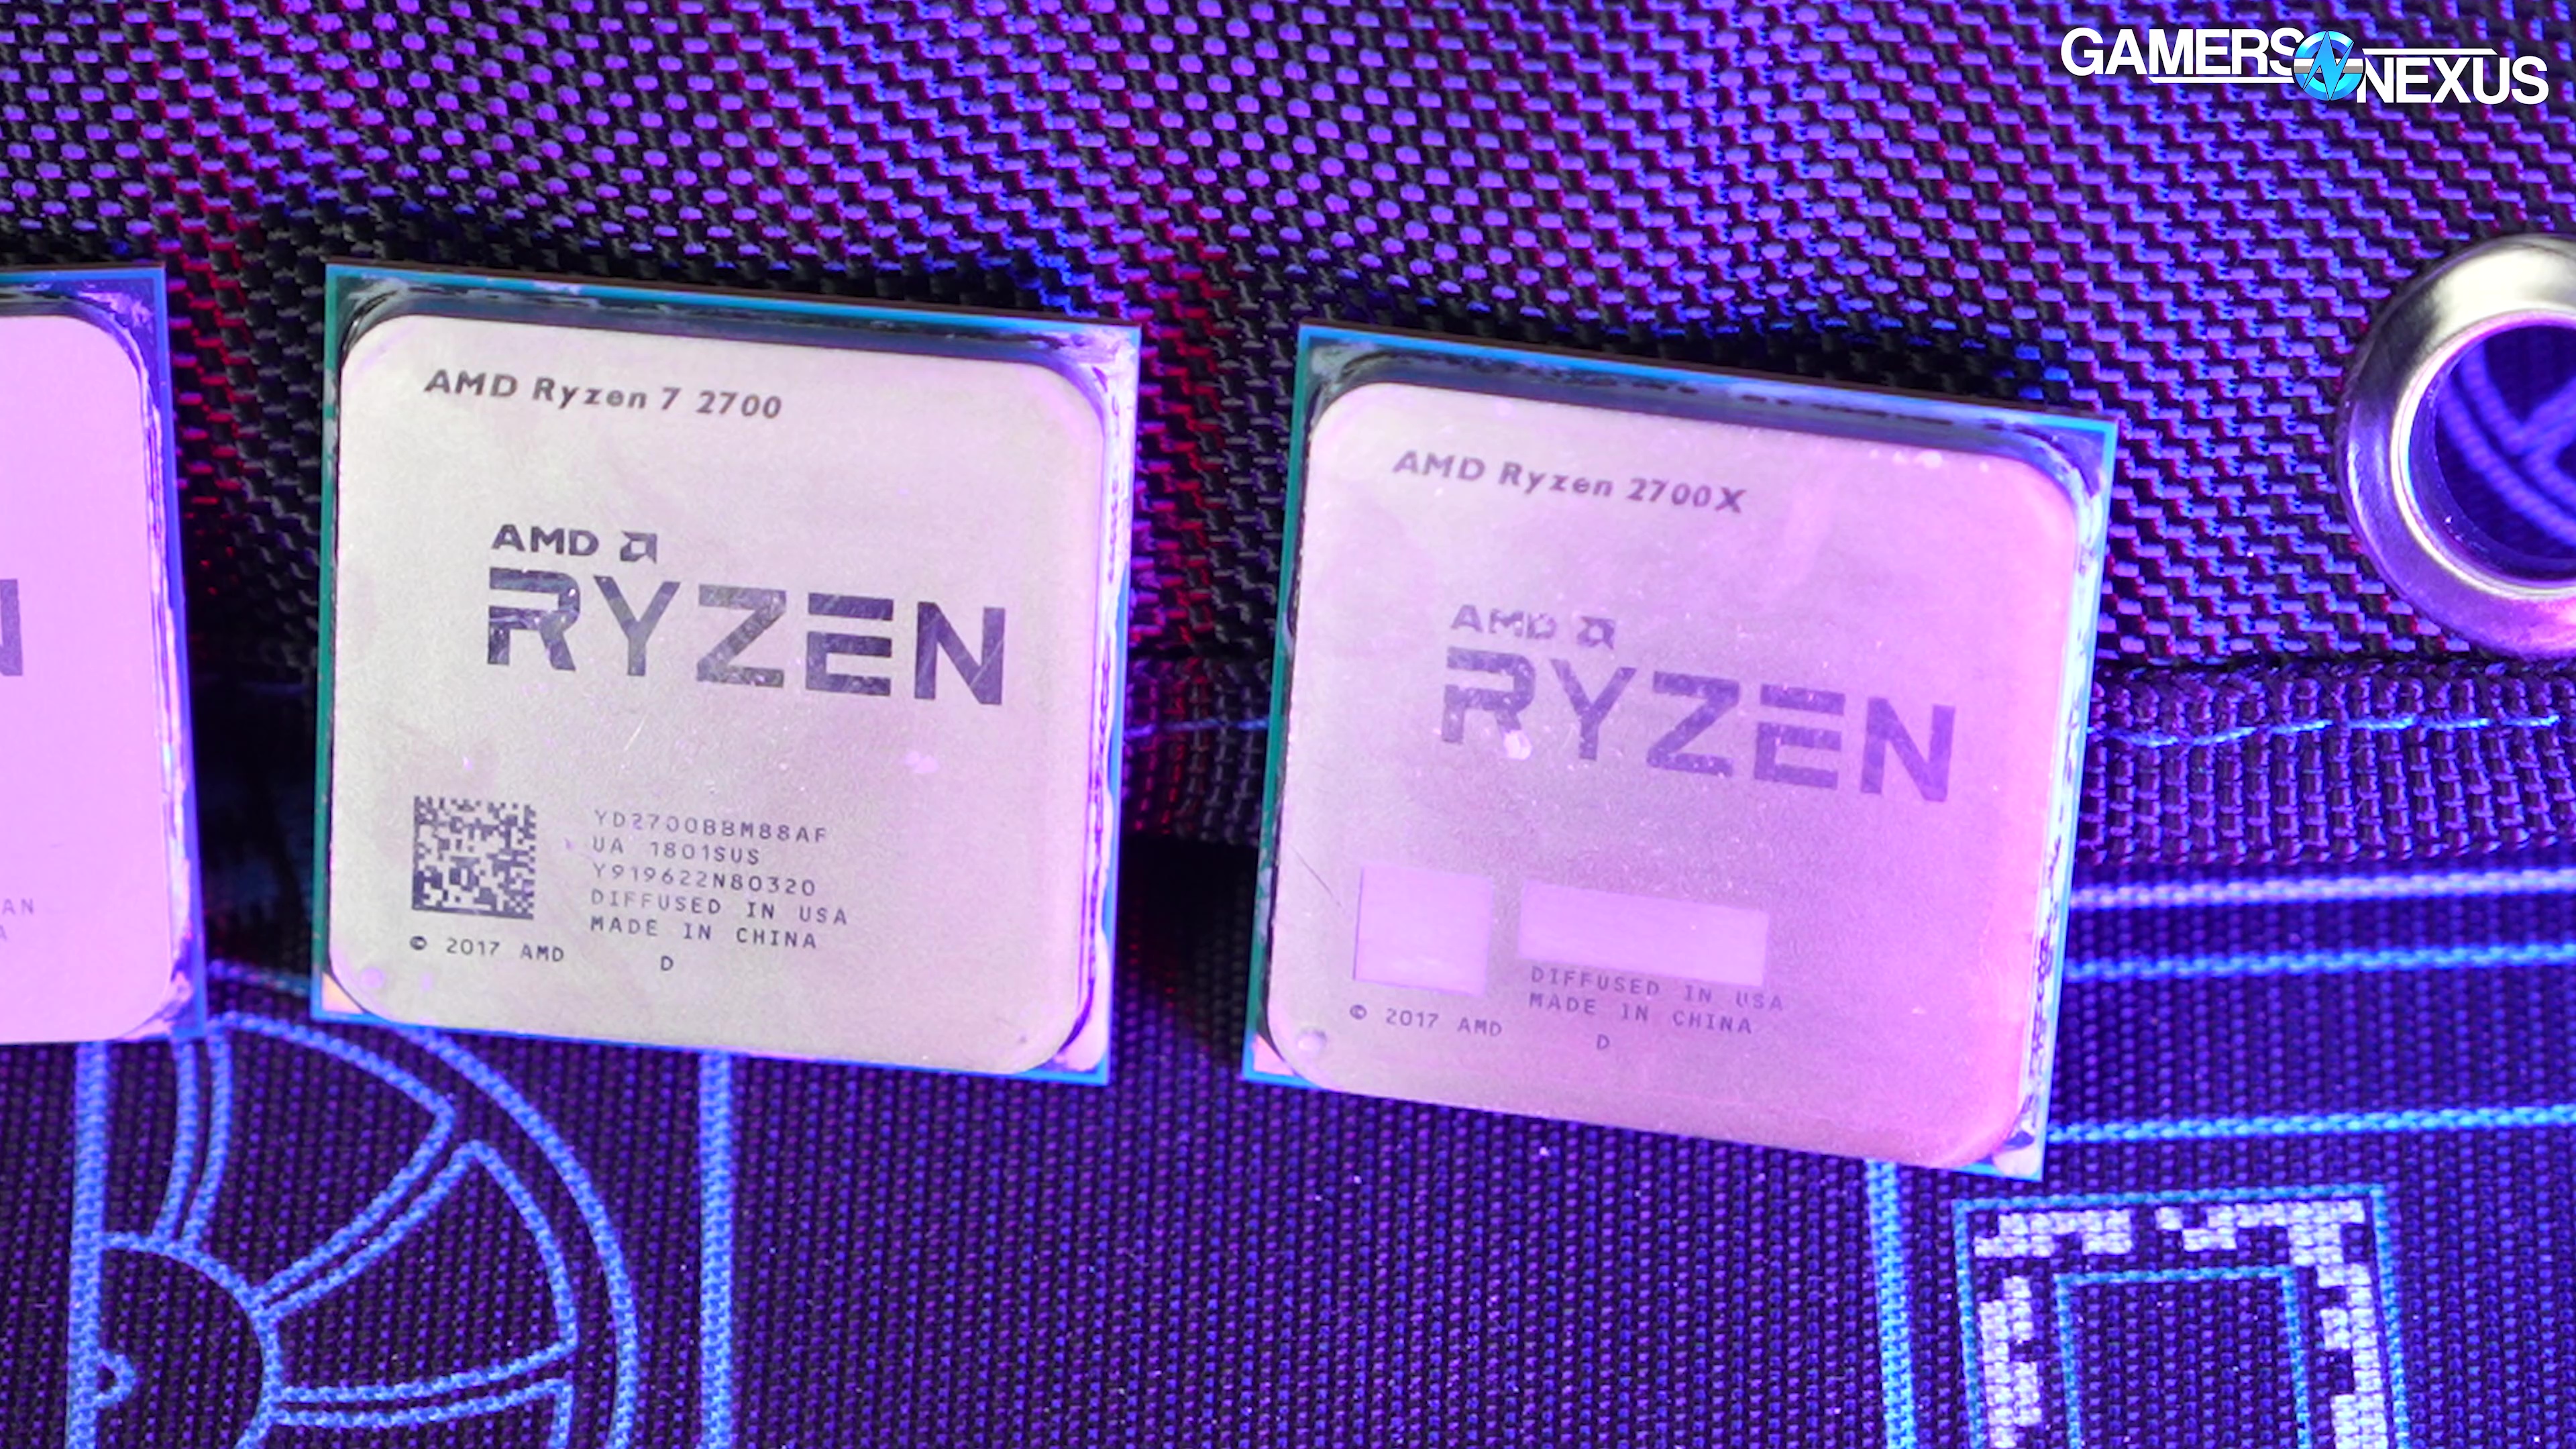 AMD Ryzen 7 7800X3D: as good as we hoped! 